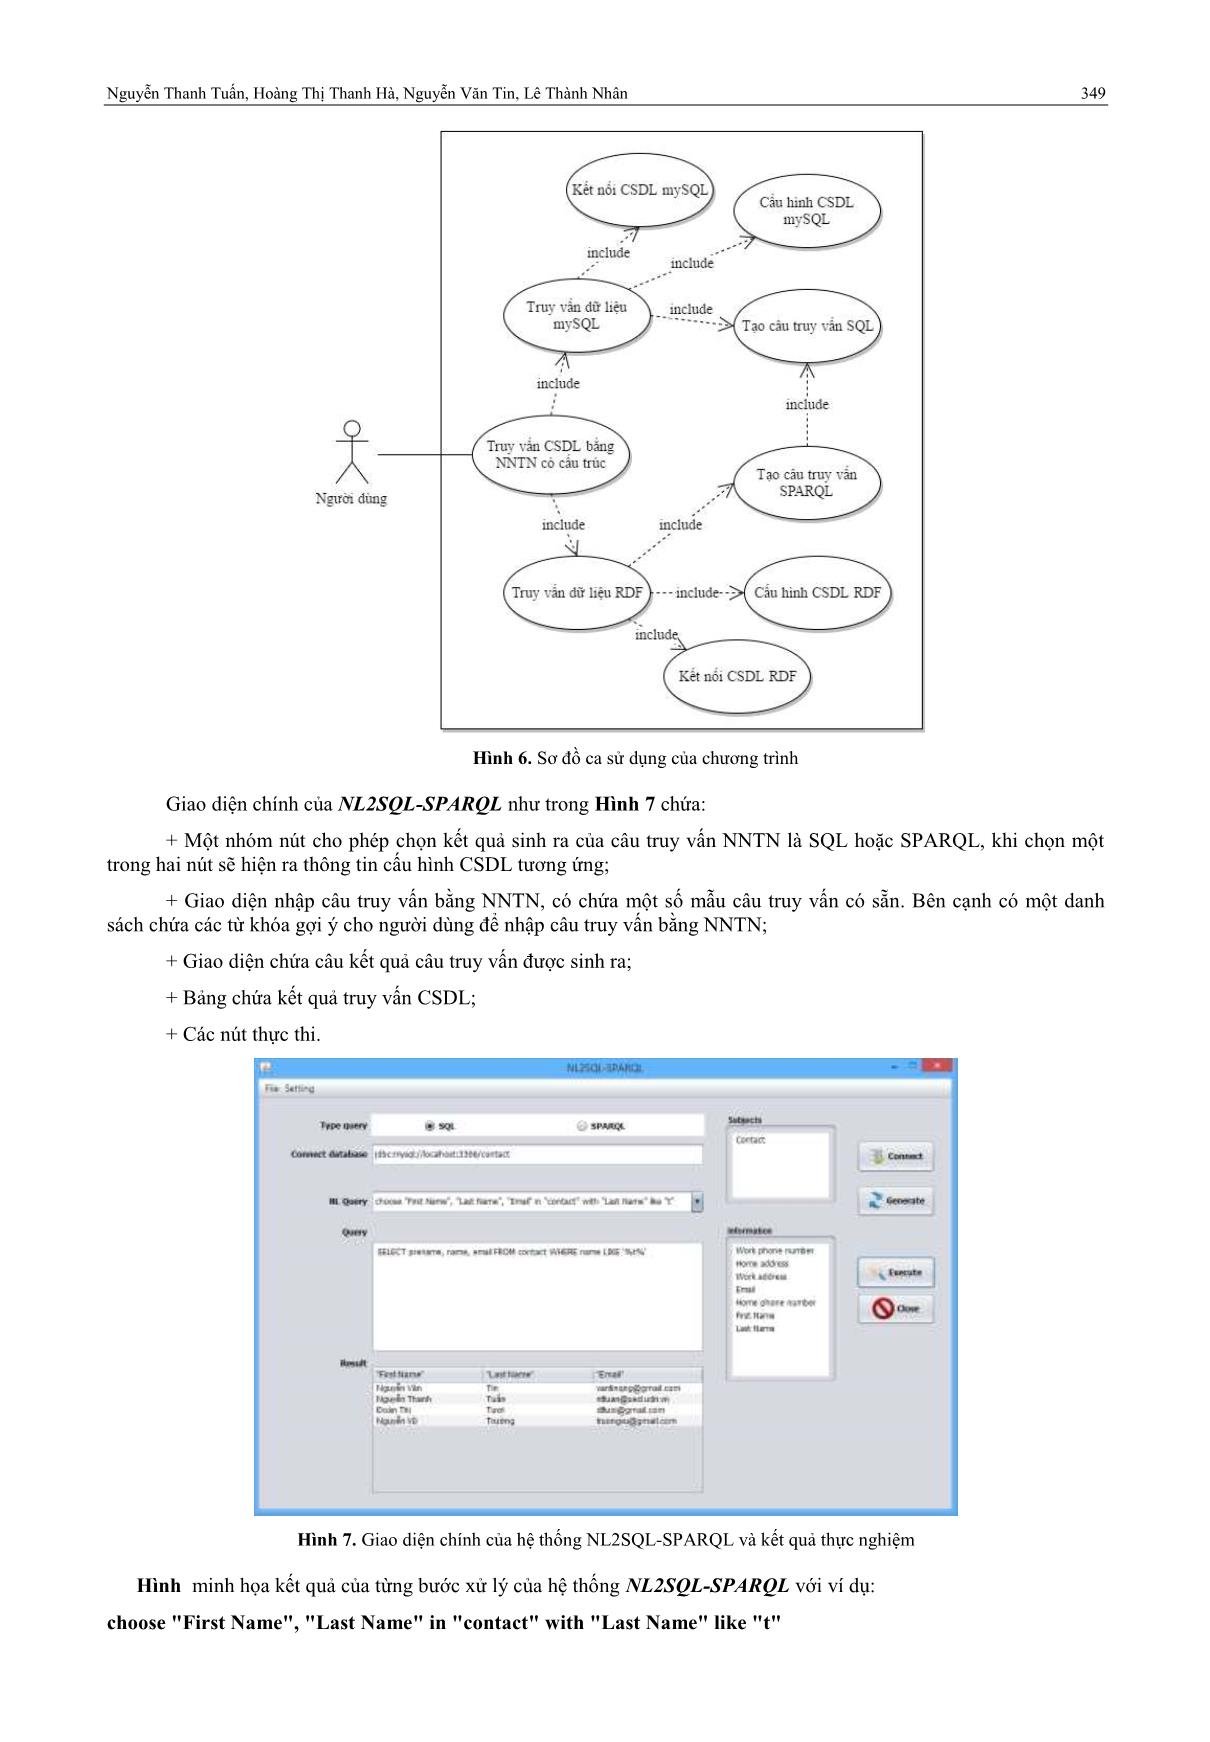 Mô hình truy vấn dữ liệu tùy chọn dựa trên ngữ nghĩa của câu truy vấn trang 10